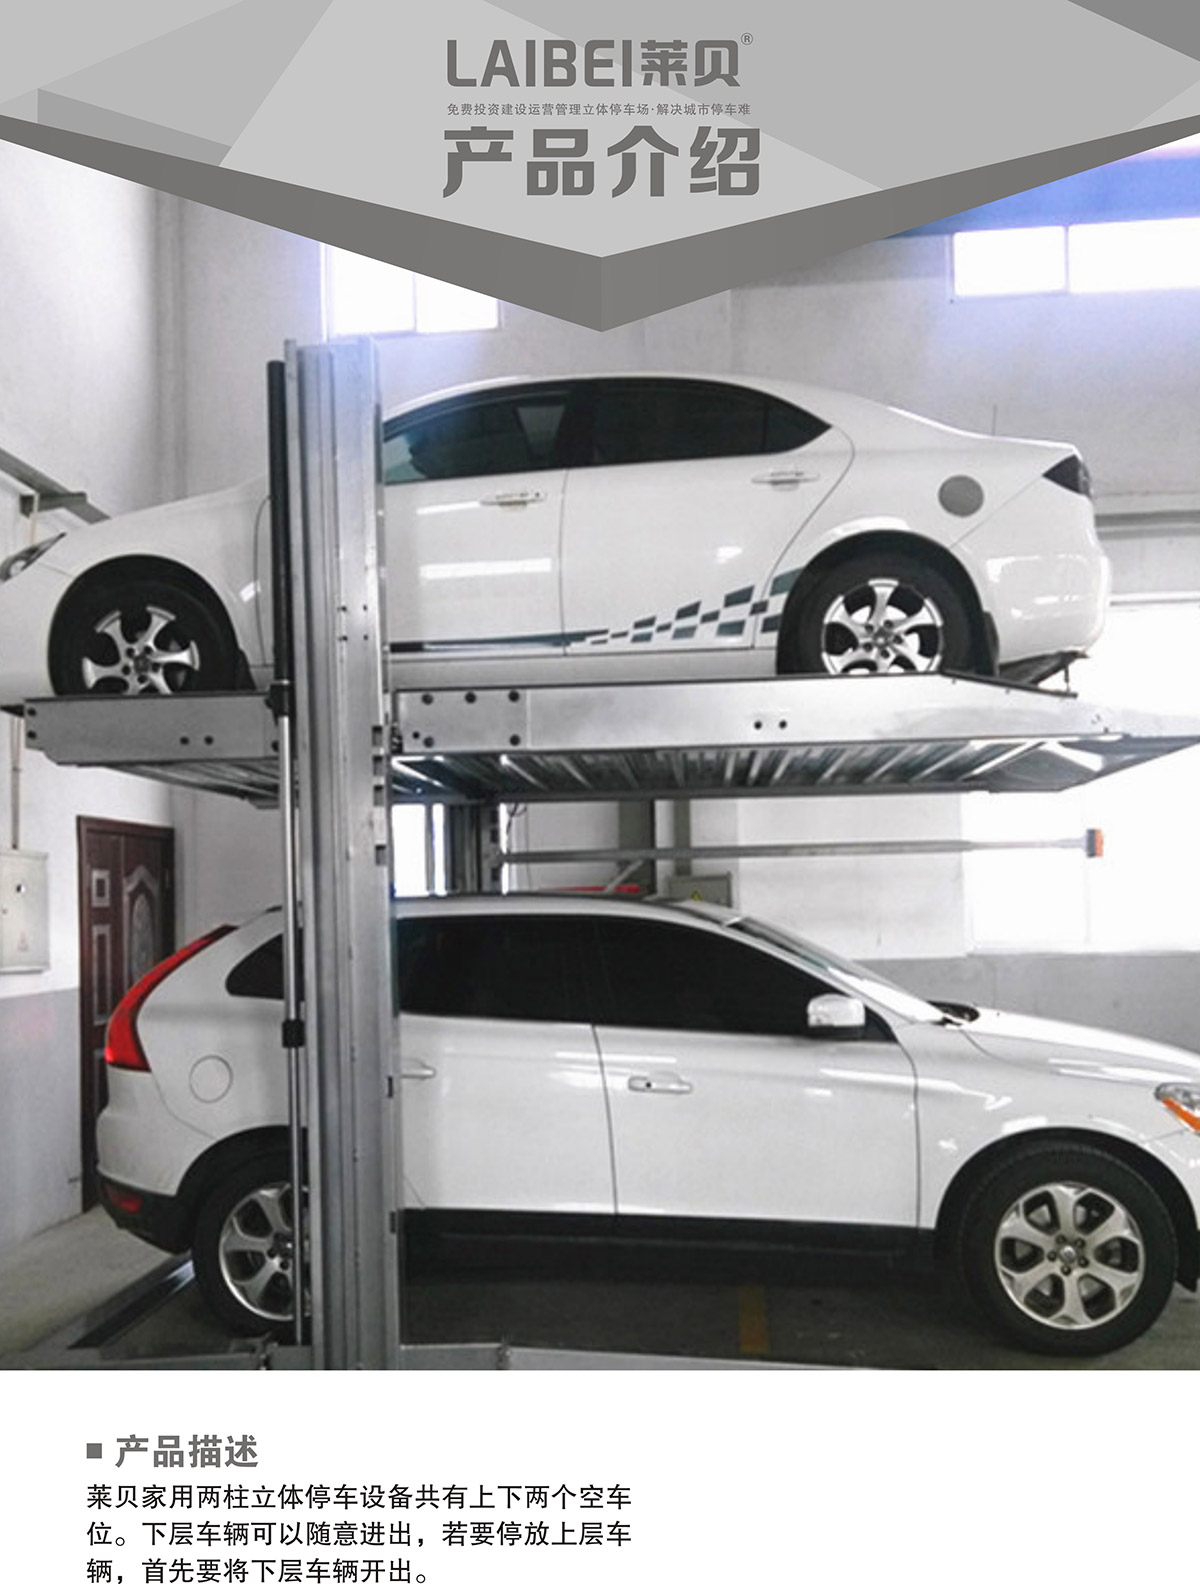 停车设备PJS两柱简易升降立体车库设备产品介绍.jpg